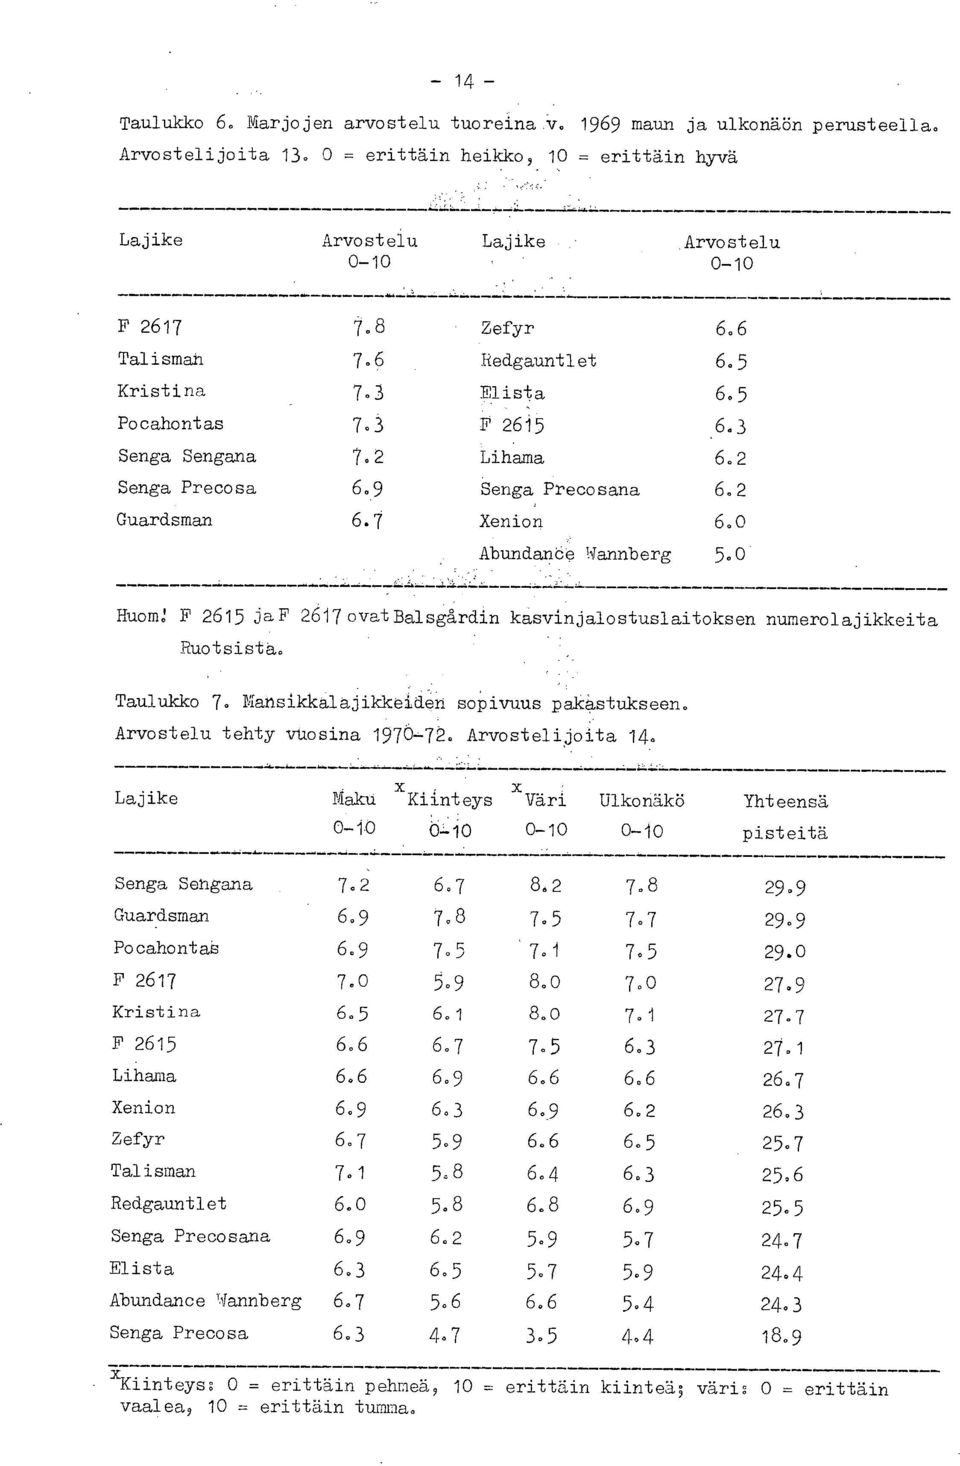 0 Abundanee Wannberg 5.0 HuomJ F 2615 jaf 2617ovatBalsgårdin kasvinjalostuslaitoksen numerolajikkeita Ruotsista. Taulukko 7. Mansikkalajikkeiden sopivuus pakastukseen. Arvostelu tehty vuosina 1970-.